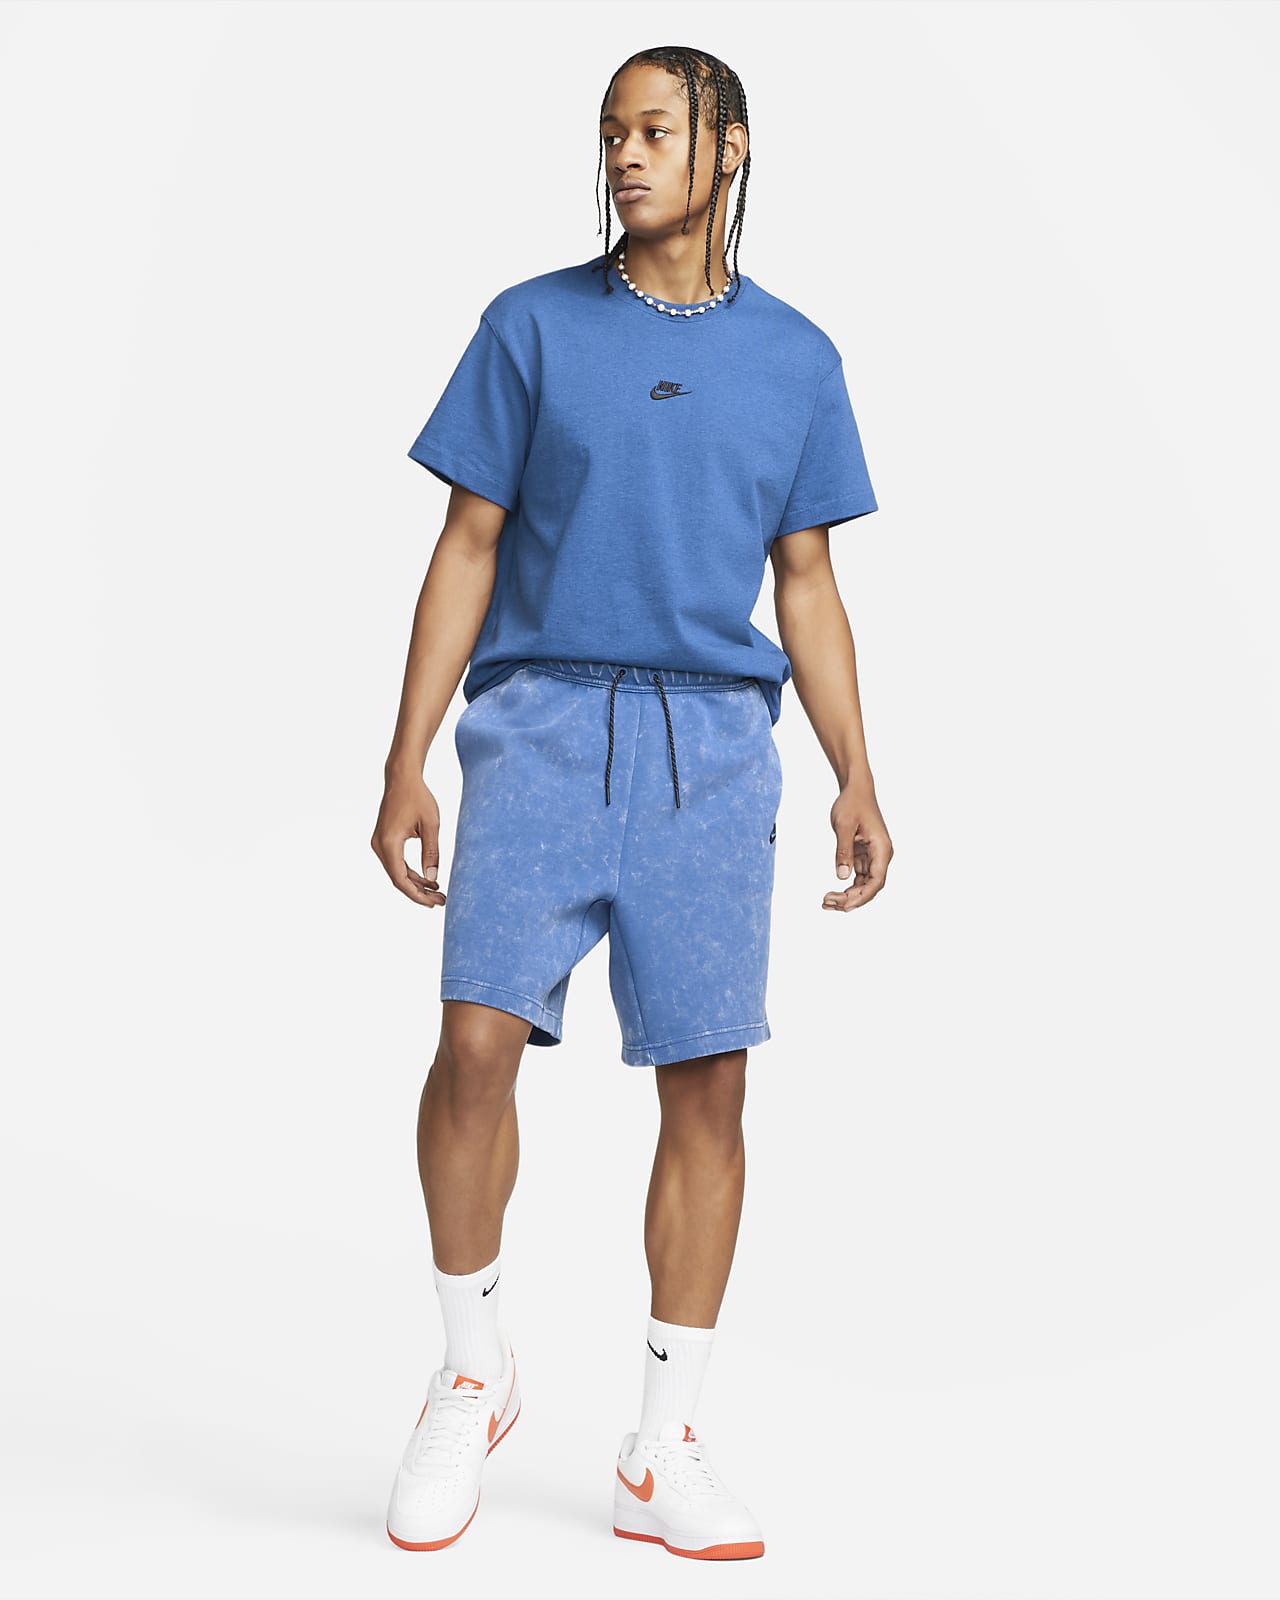 kiwi Correo aéreo utilizar Nike Sportswear Tech Fleece Pantalón corto con efecto lavado - Hombre. Nike  ES